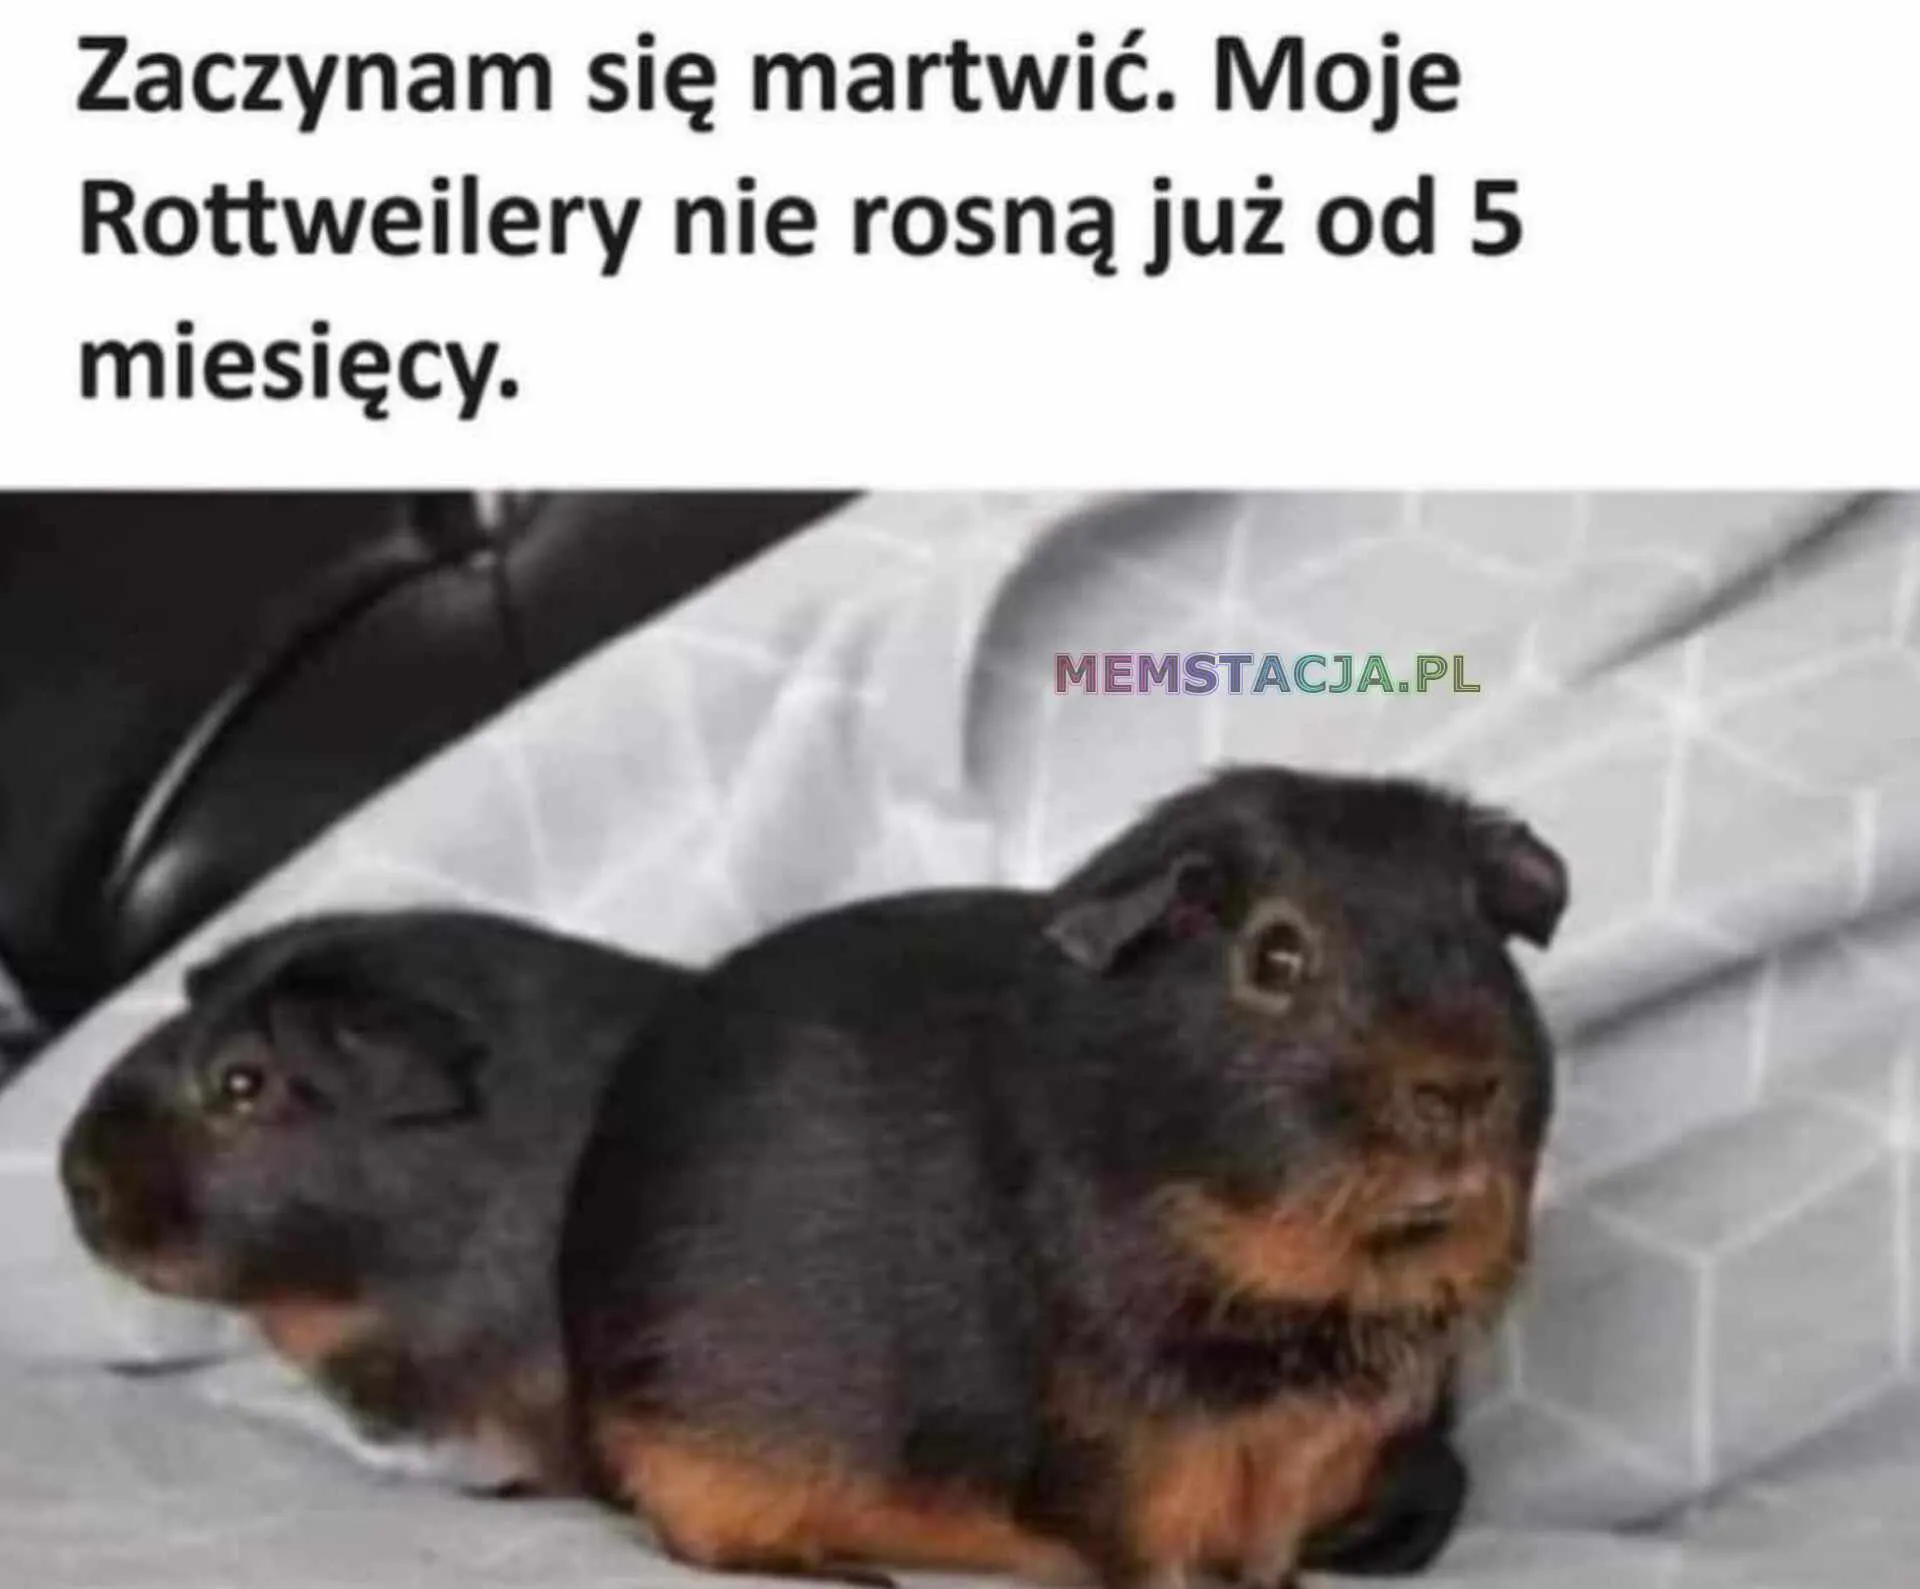 Mem przedstawiający dwie świnki morskie: 'Zaczynam się martwić. Moje Rottweilery nie rosną już od 5 miesięcy.'